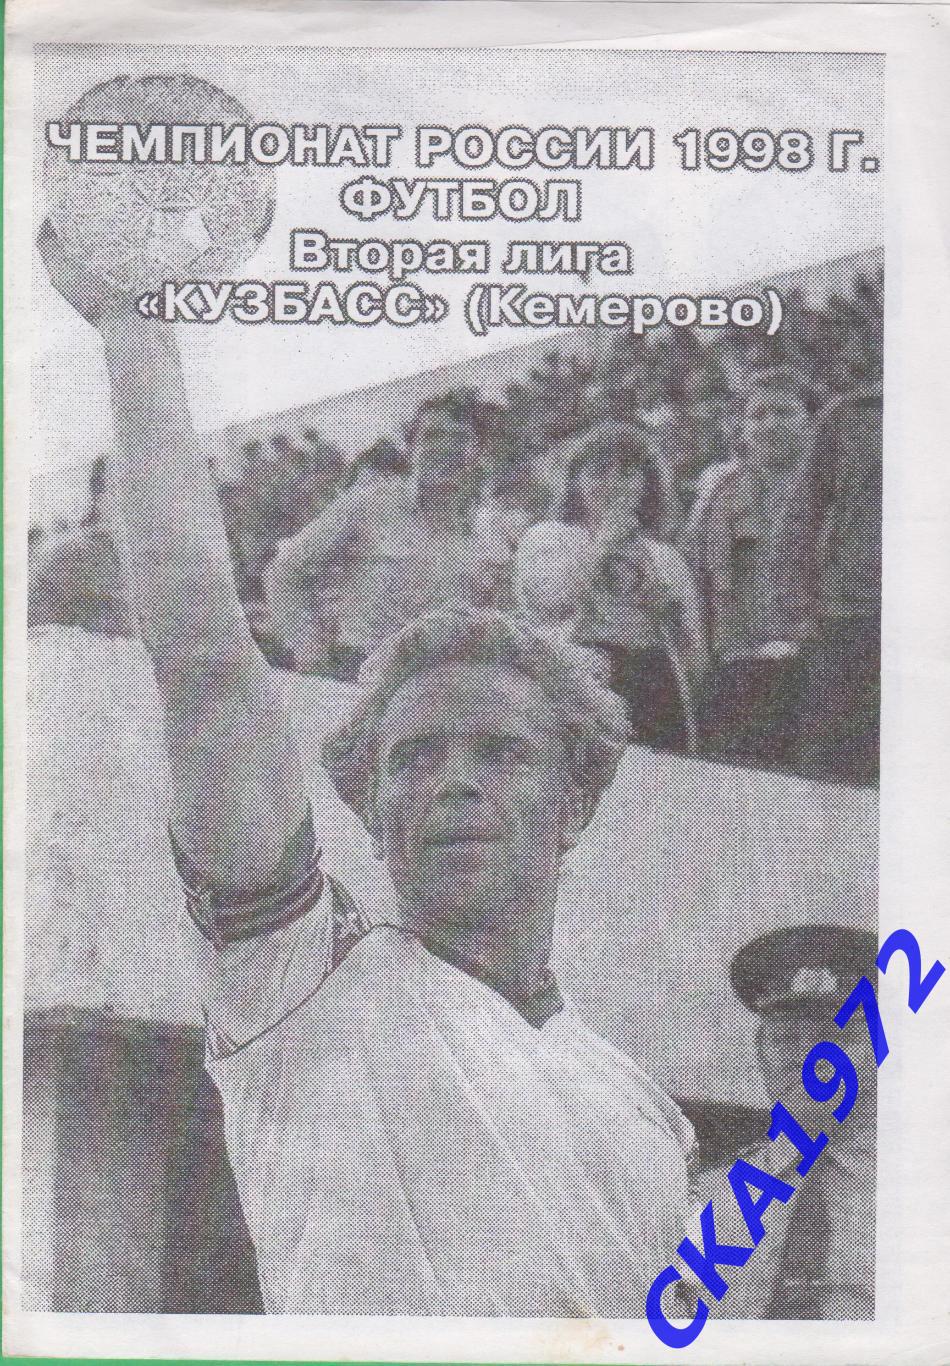 фотобуклет Кузбасс Кемерово Вторая лига 1998 +++